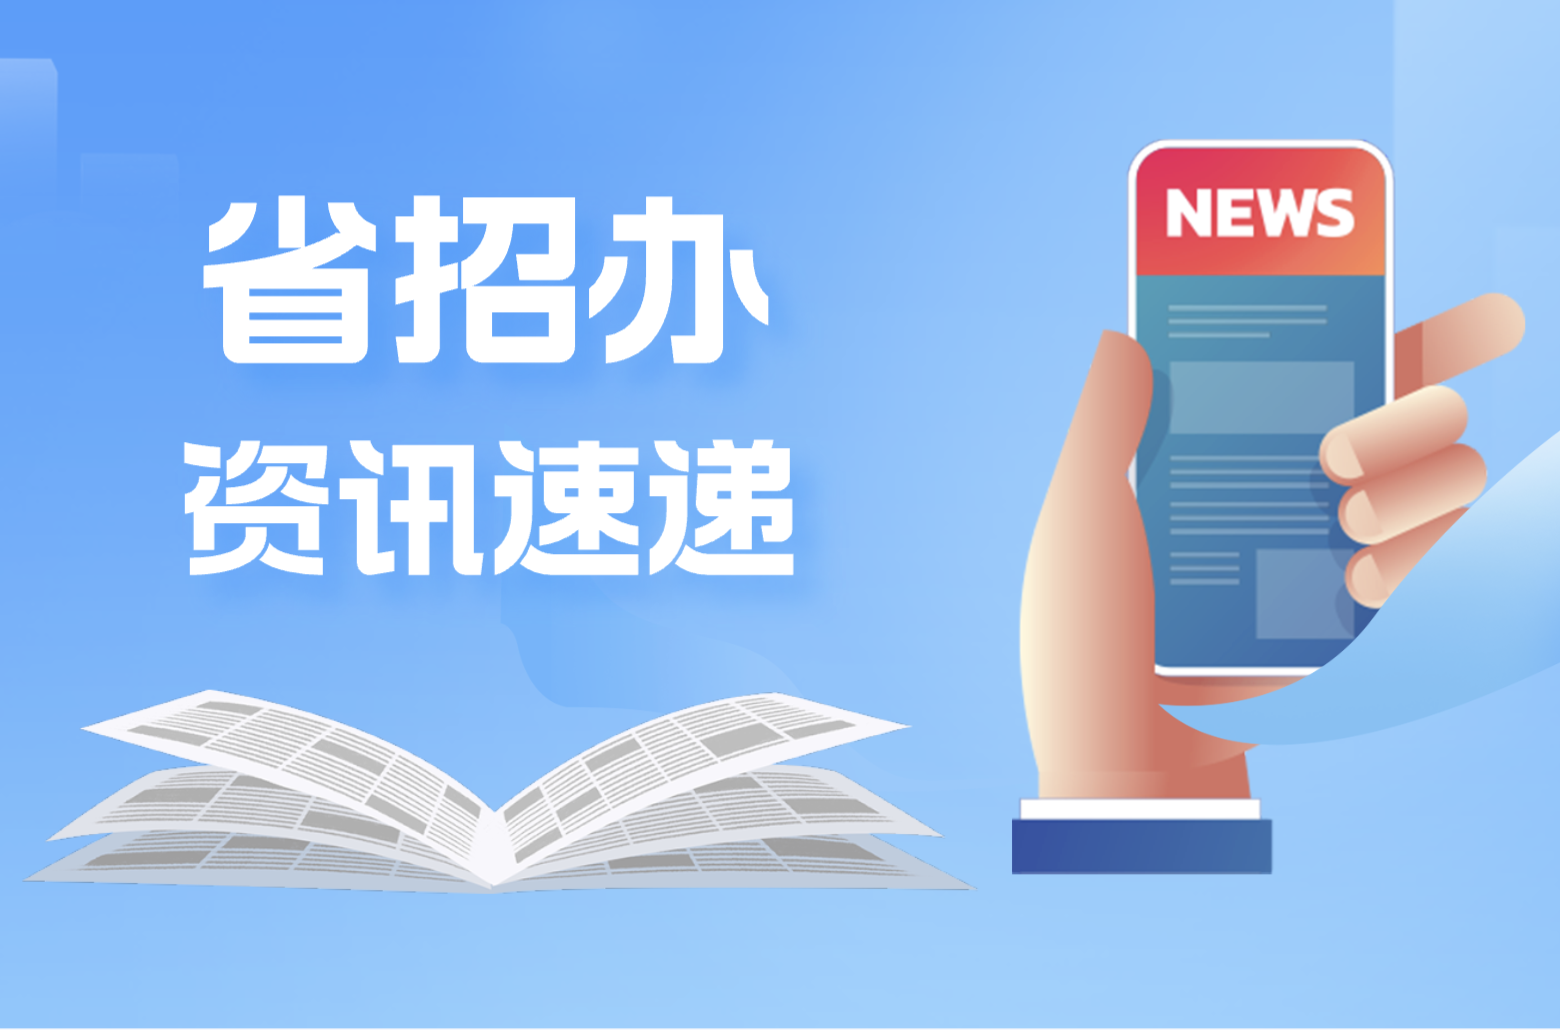 广东省 2023 年普通高等学校招生工作规定